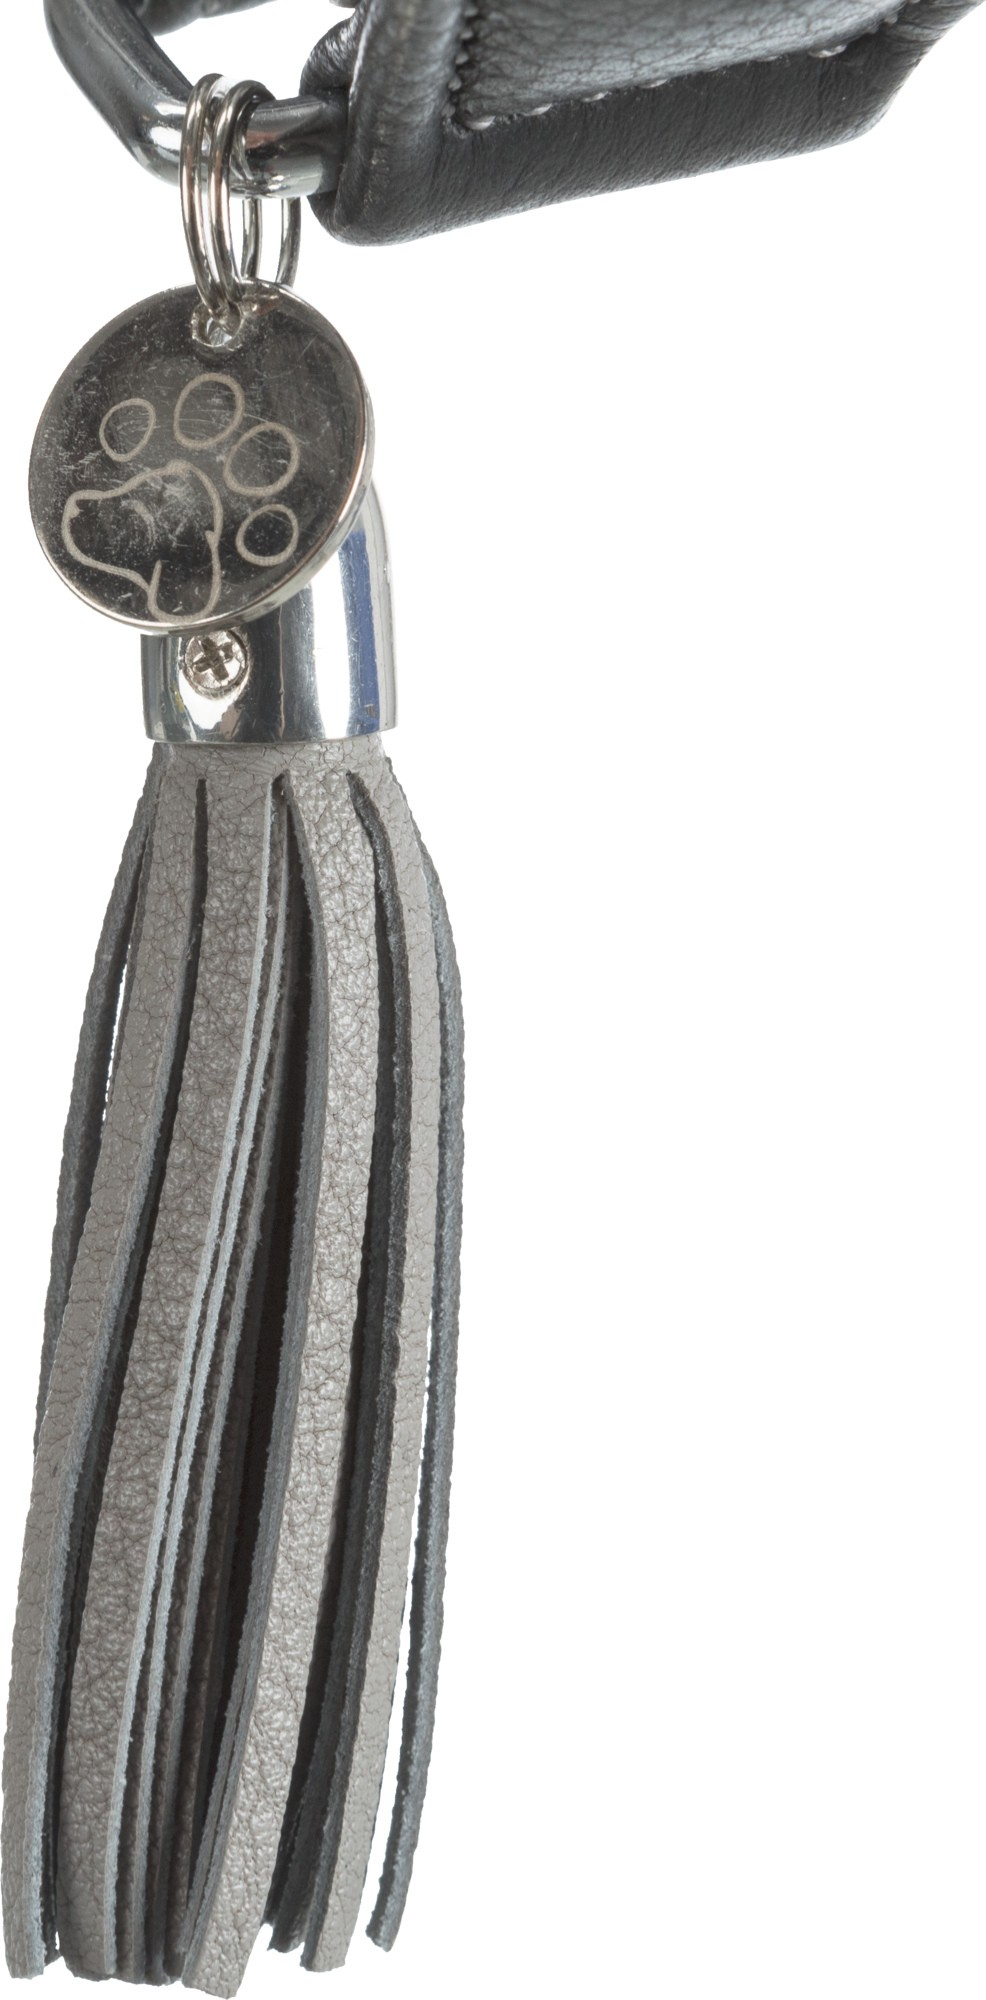 Halsband Comfort voor windhonden, zwart en grijs, Active